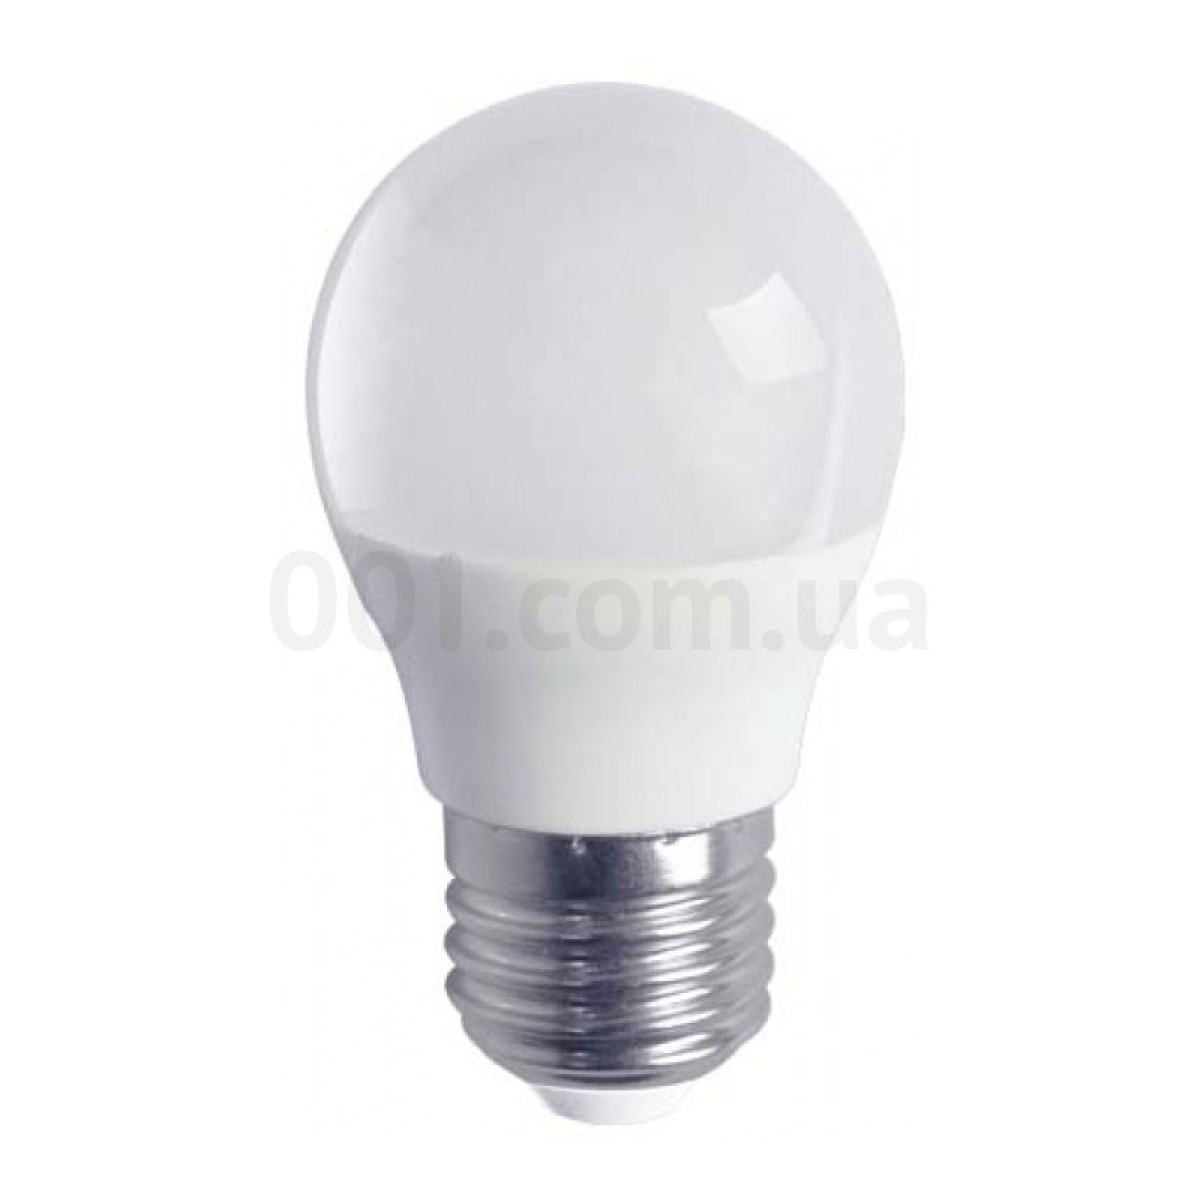 Світлодіодна лампа LB-745 G45 (куля) 6Вт 6400K E27, Feron 256_256.jpg